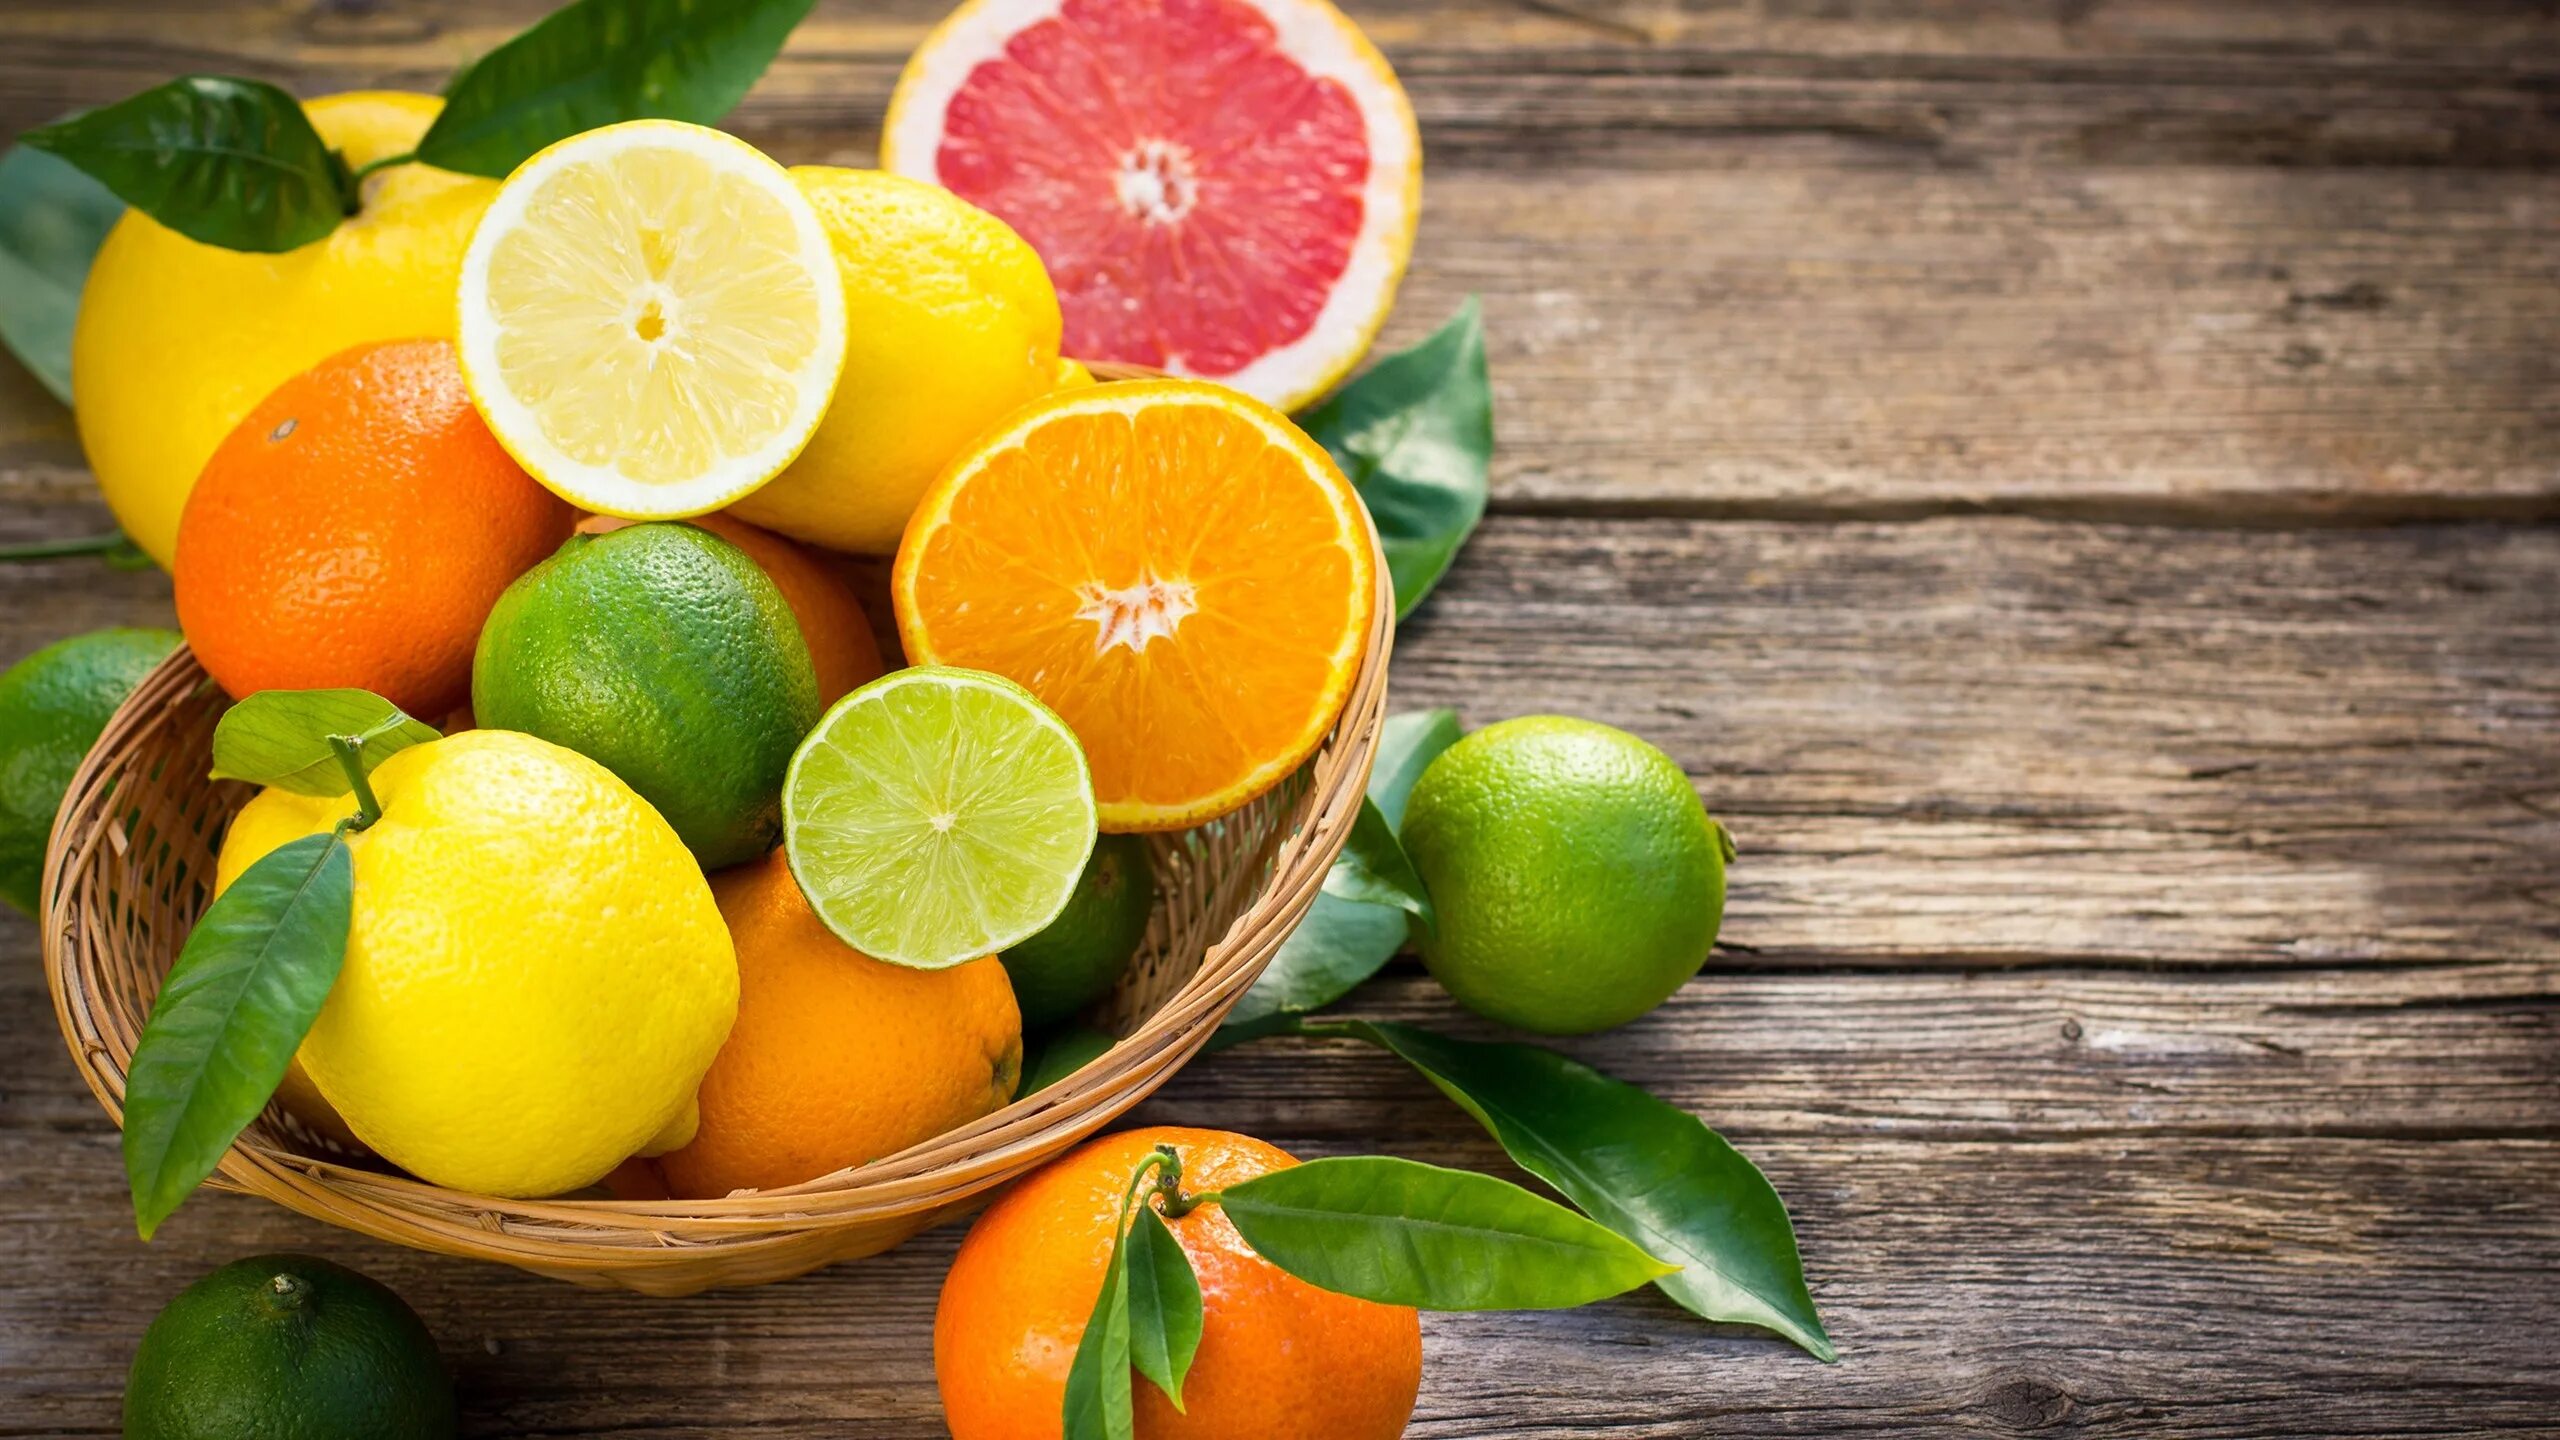 Цитрус (Citrus) – лимон. Лайм лимон апельсин мандарин. Лайм и грейпфрут. Апельсин, лимон, мандарин, грейпфрут, Цитрон. Цитрусовые фрукты это